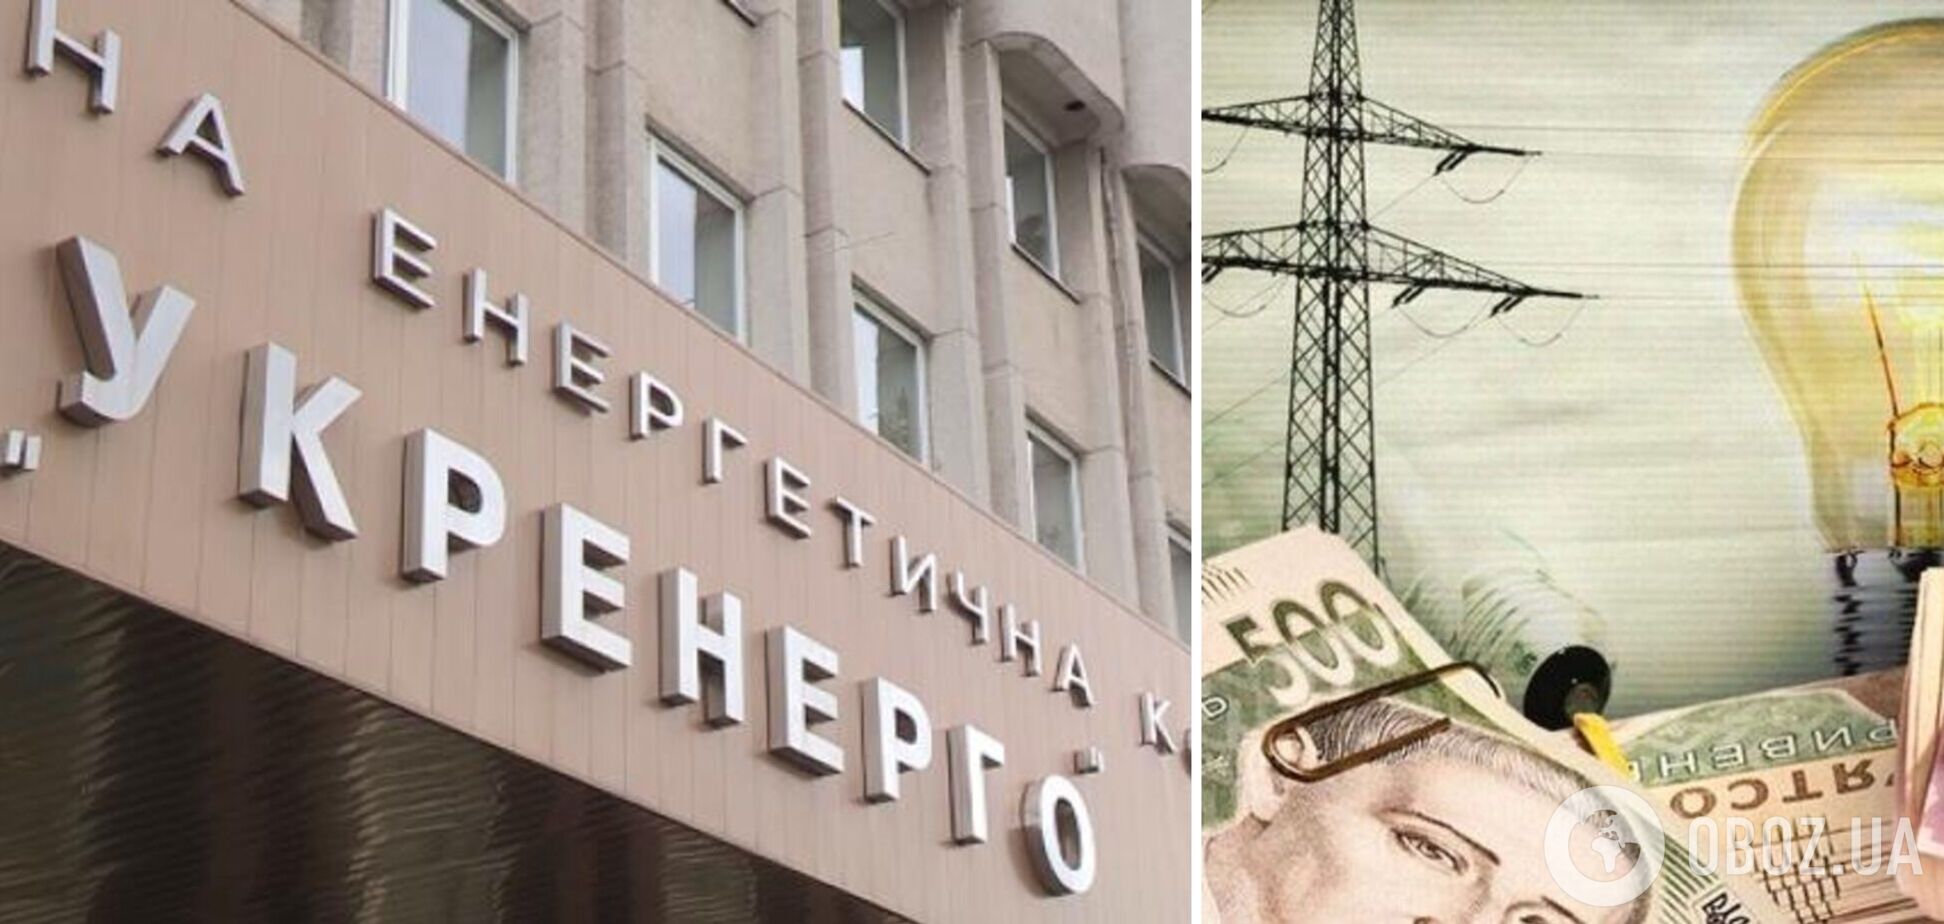 'Укрэнерго' в затруднительном положении из-за долгов на рынке, – Омельченко